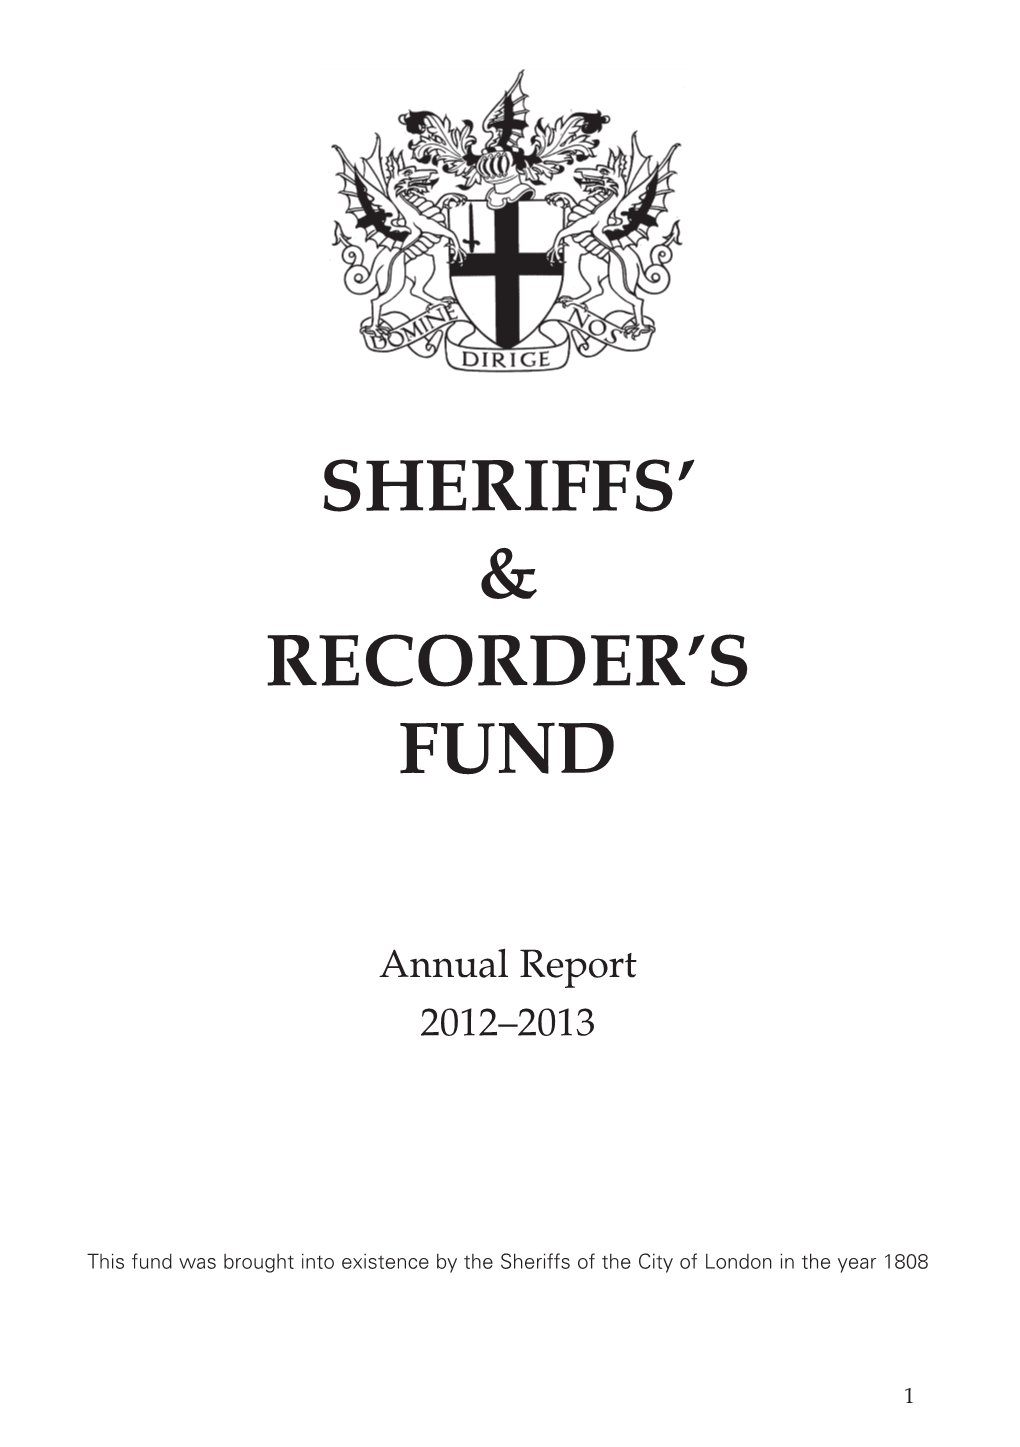 Sheriffs' & Recorder's Fund